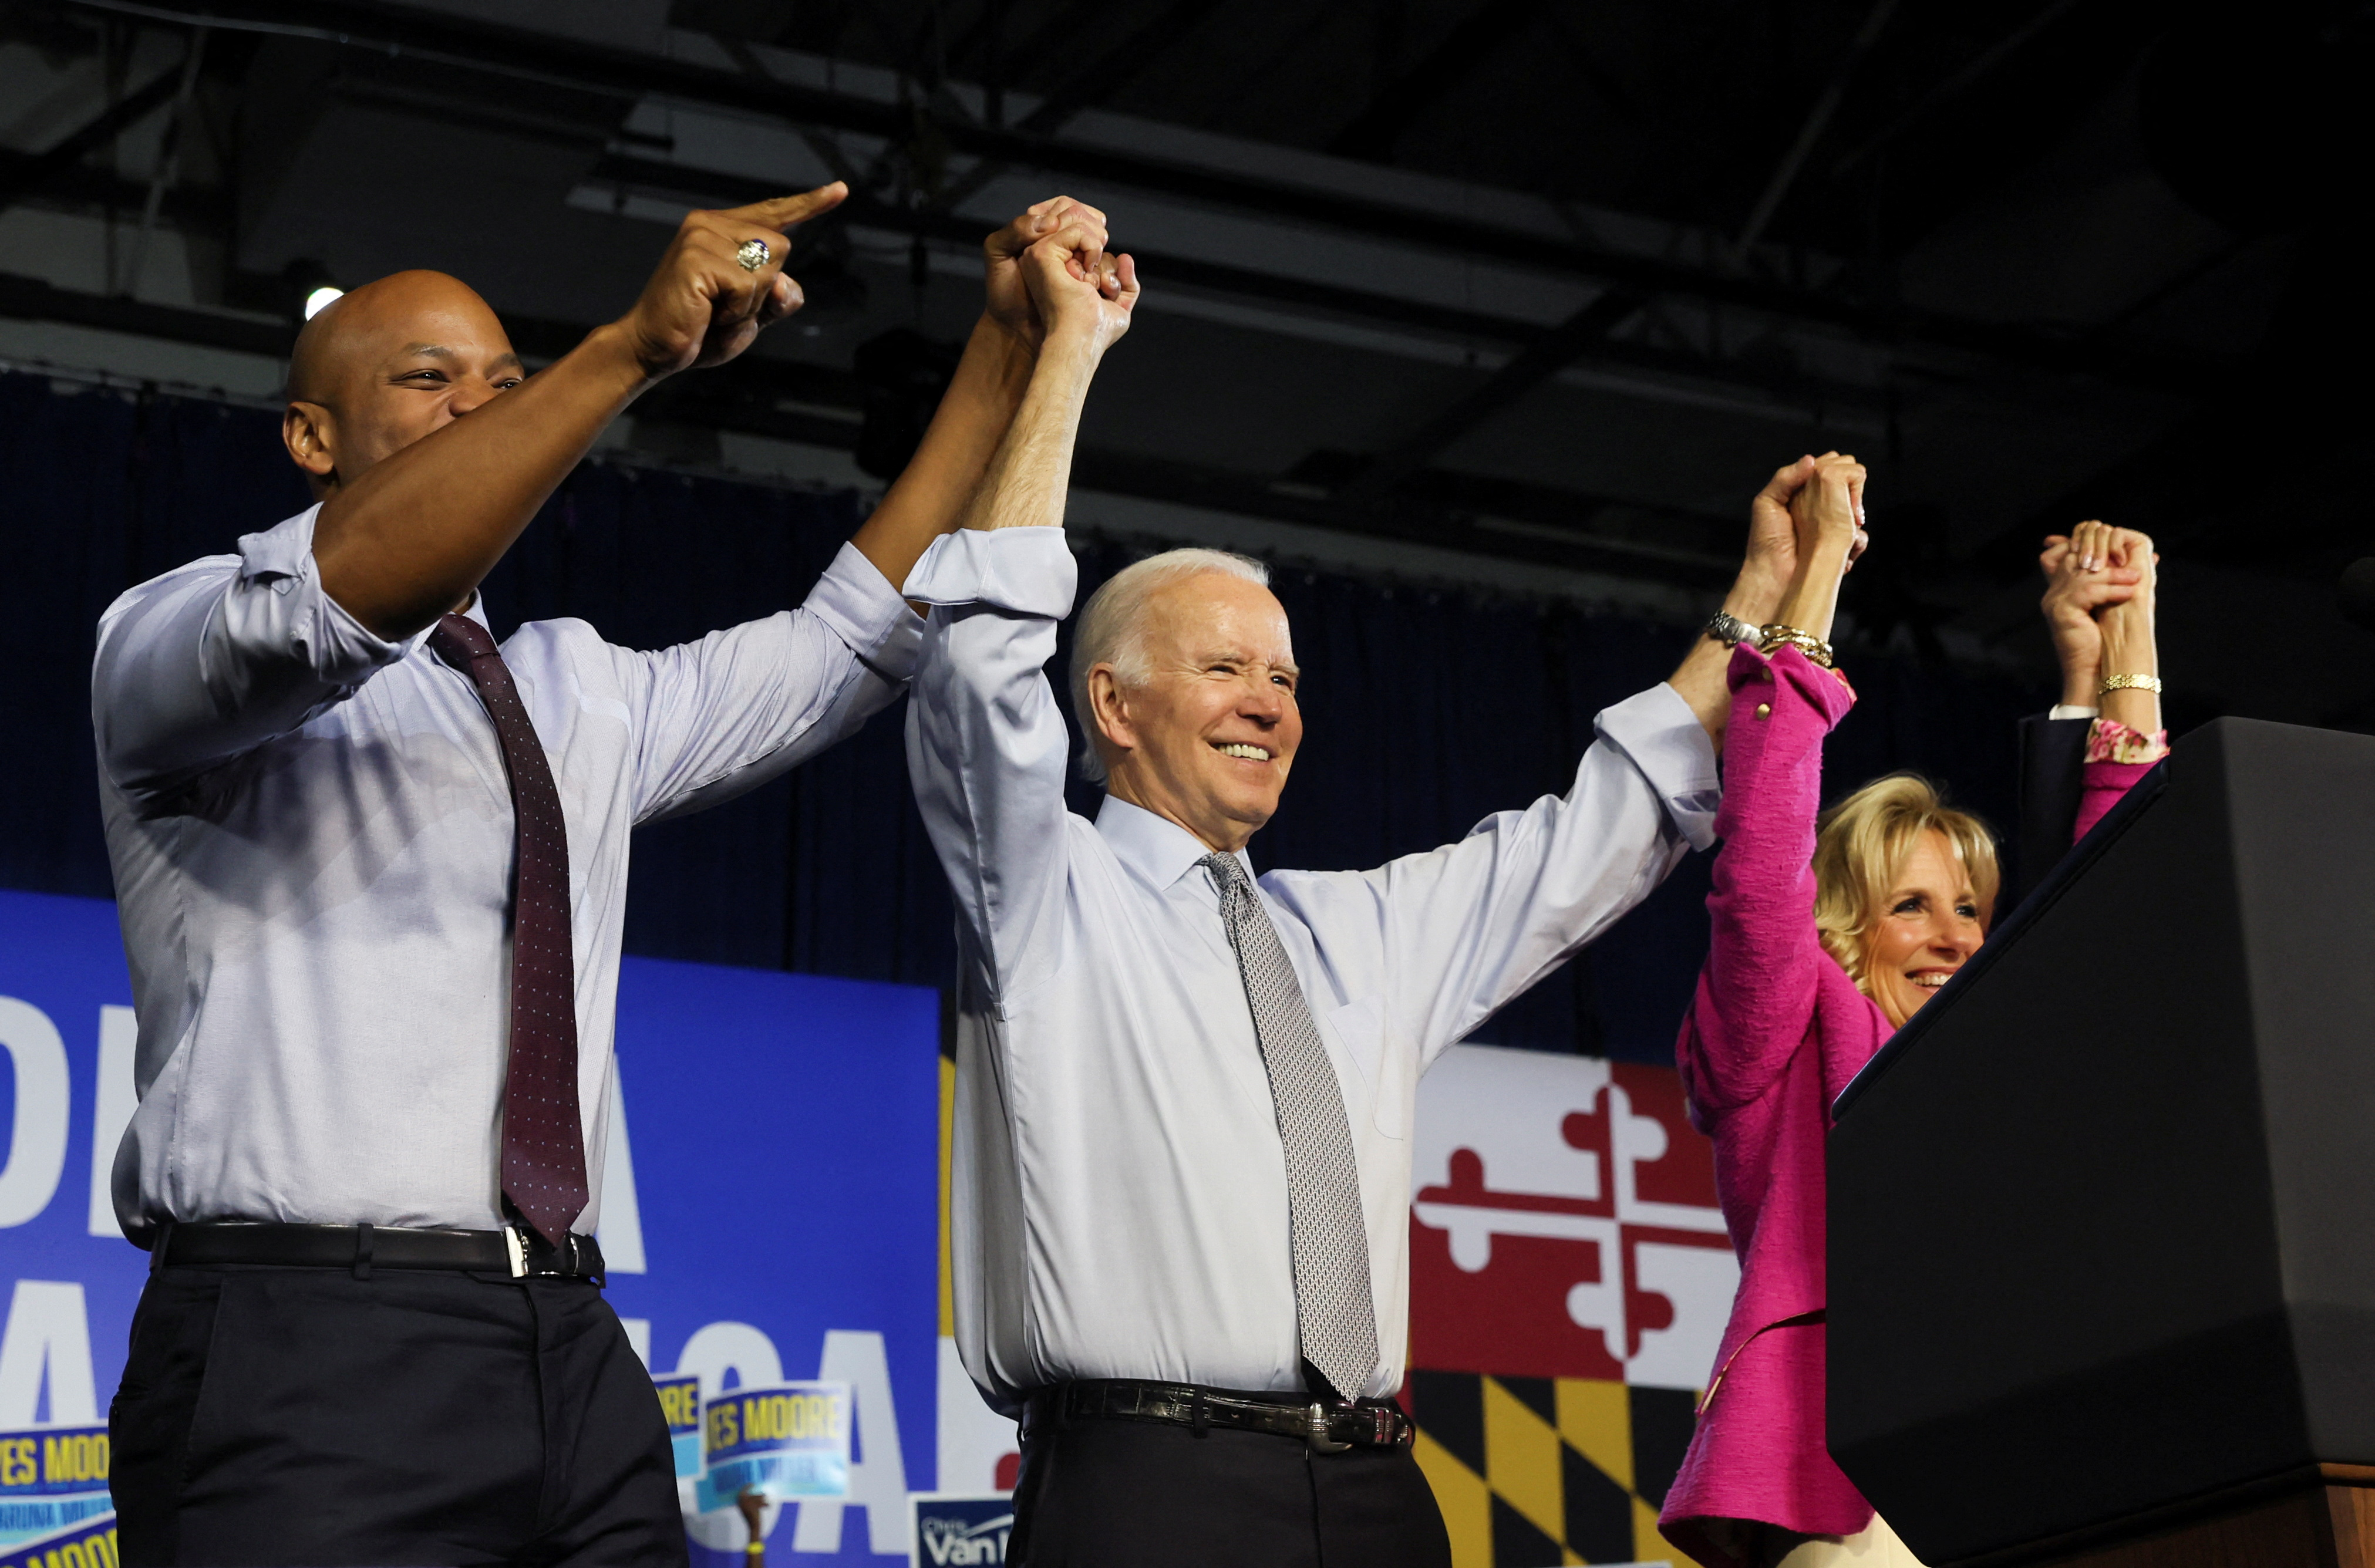 El presidente Biden encabezó un acto en Maryland. (REUTERS/Leah Millis)